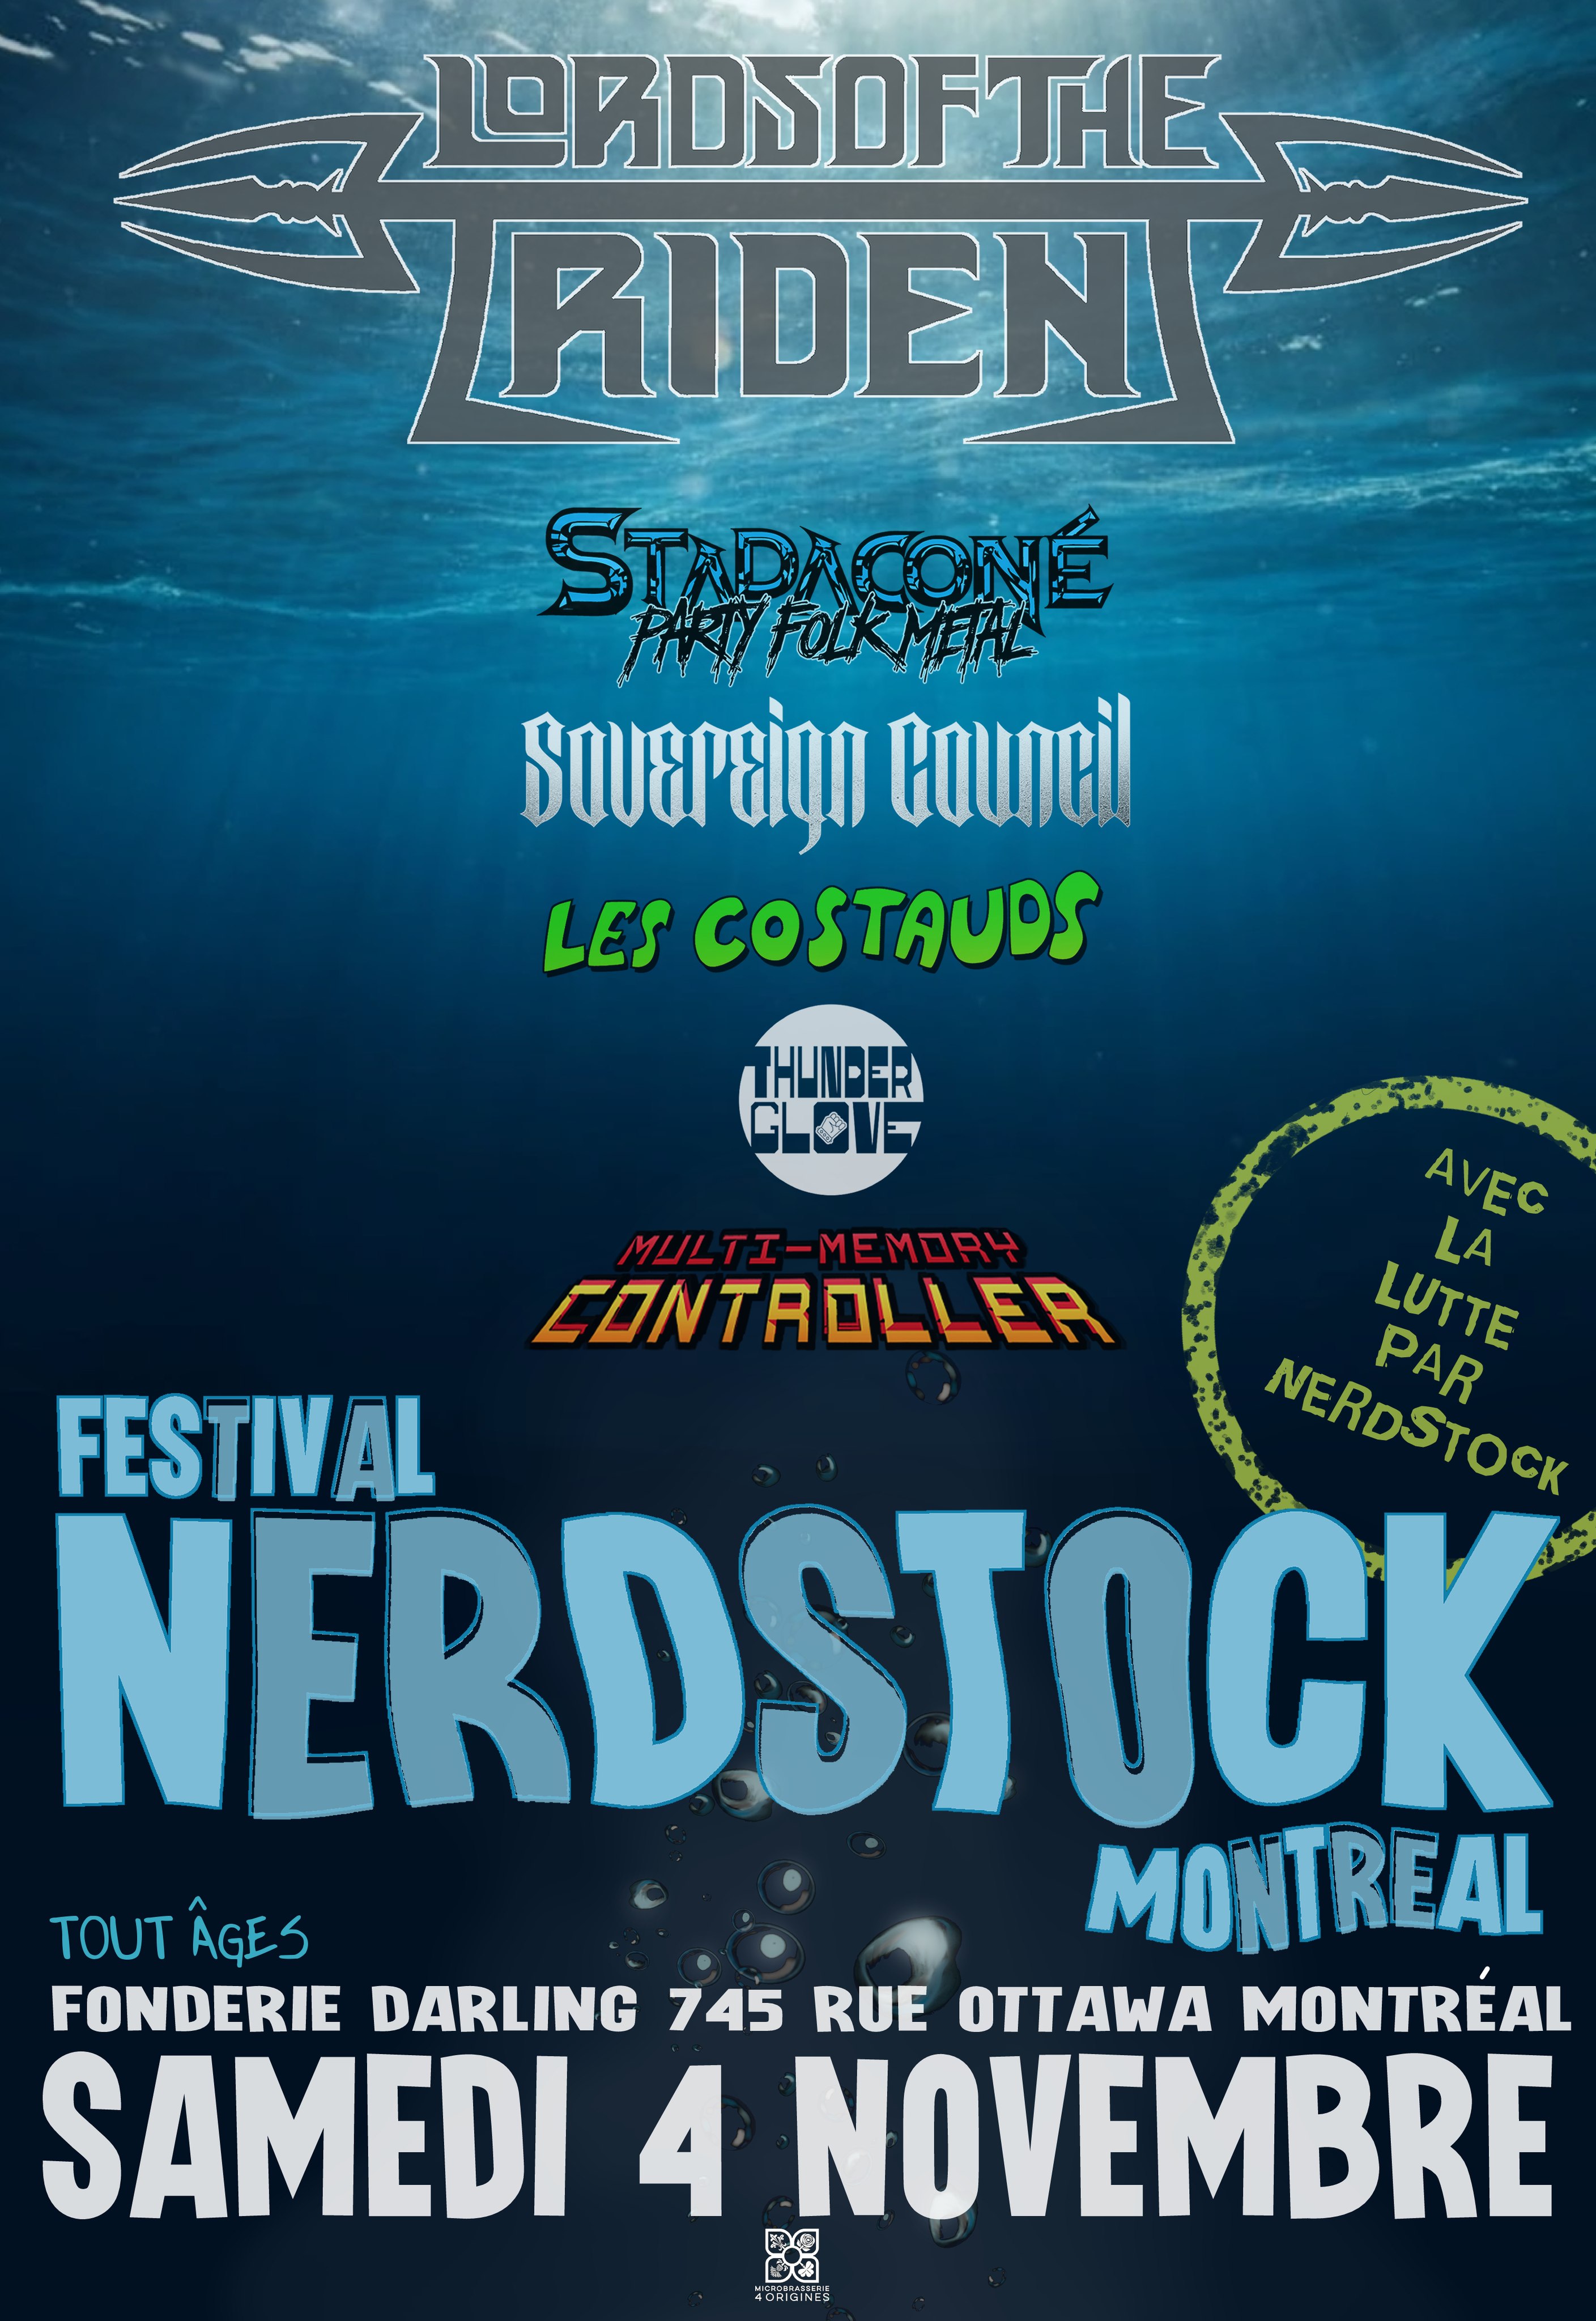 Festival Nerdstock MTL